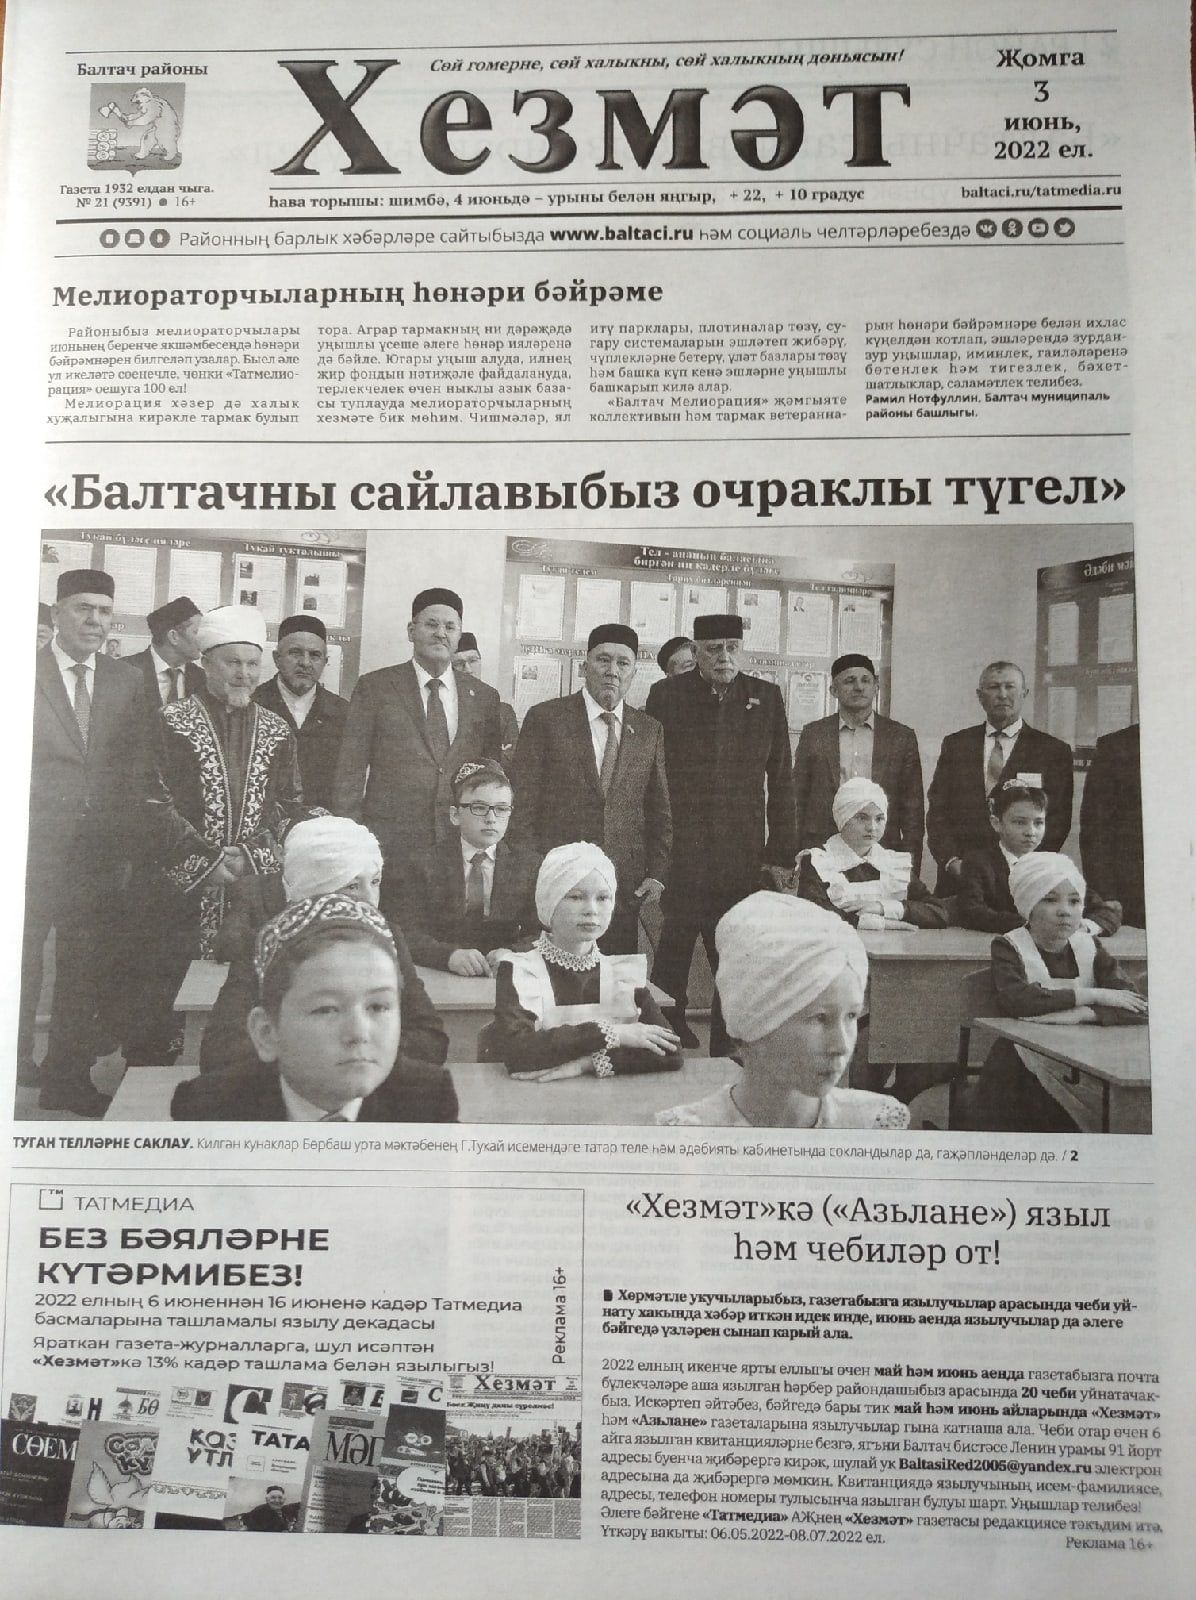 Газетаның 21нче санында (3 июнь, 2022 ел) чыгарылган белдерүләр һәм рекламалар